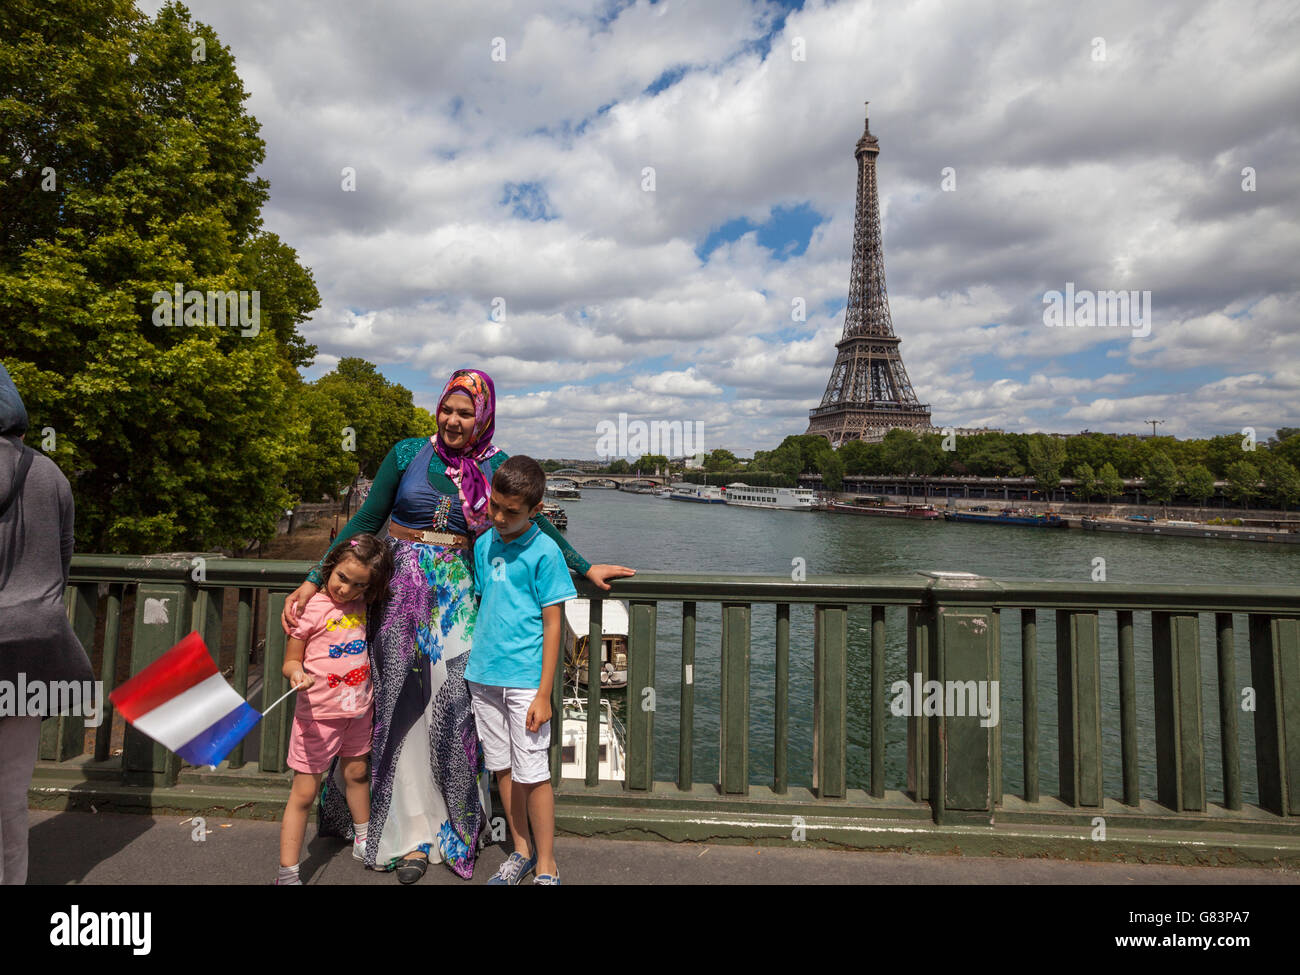 Femme musulmane posant avec un drapeau français à la Seine pont avec Tour Eiffel ( Tour Eiffel ) en arrière-plan, Paris, France Banque D'Images